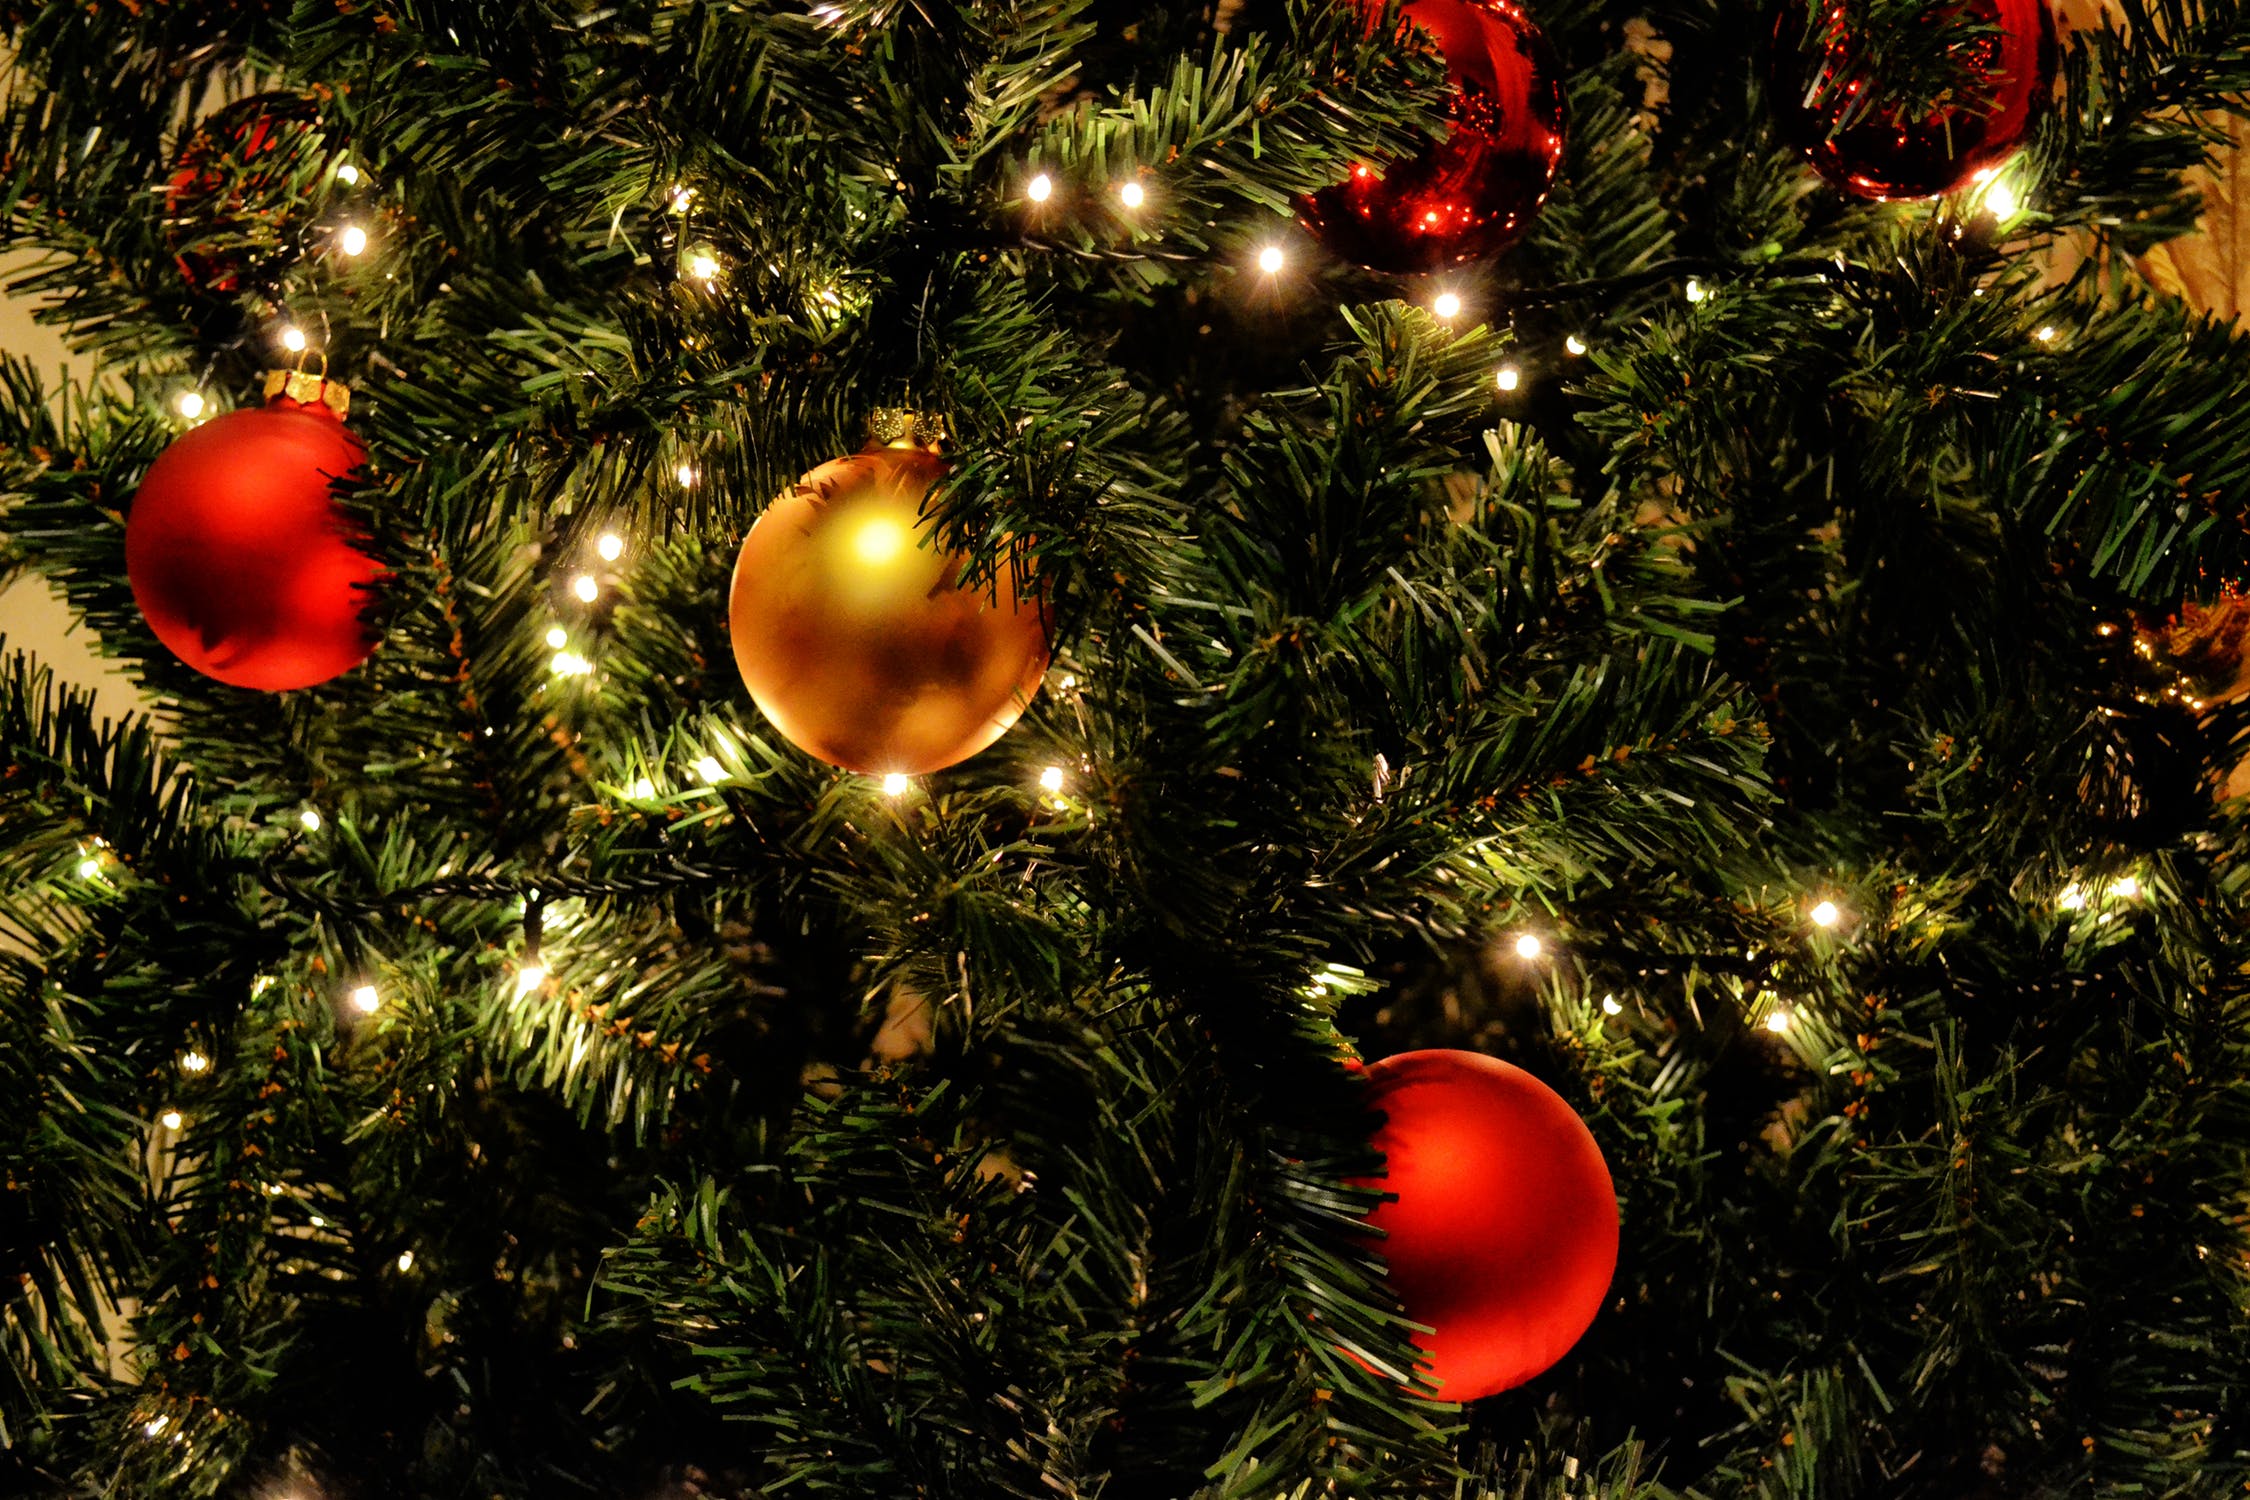 Δώστε προσοχή: Τι κάνουμε αν πιάσει φωτιά το Χριστουγεννιάτικο δέντρο ή τα λαμπάκια;